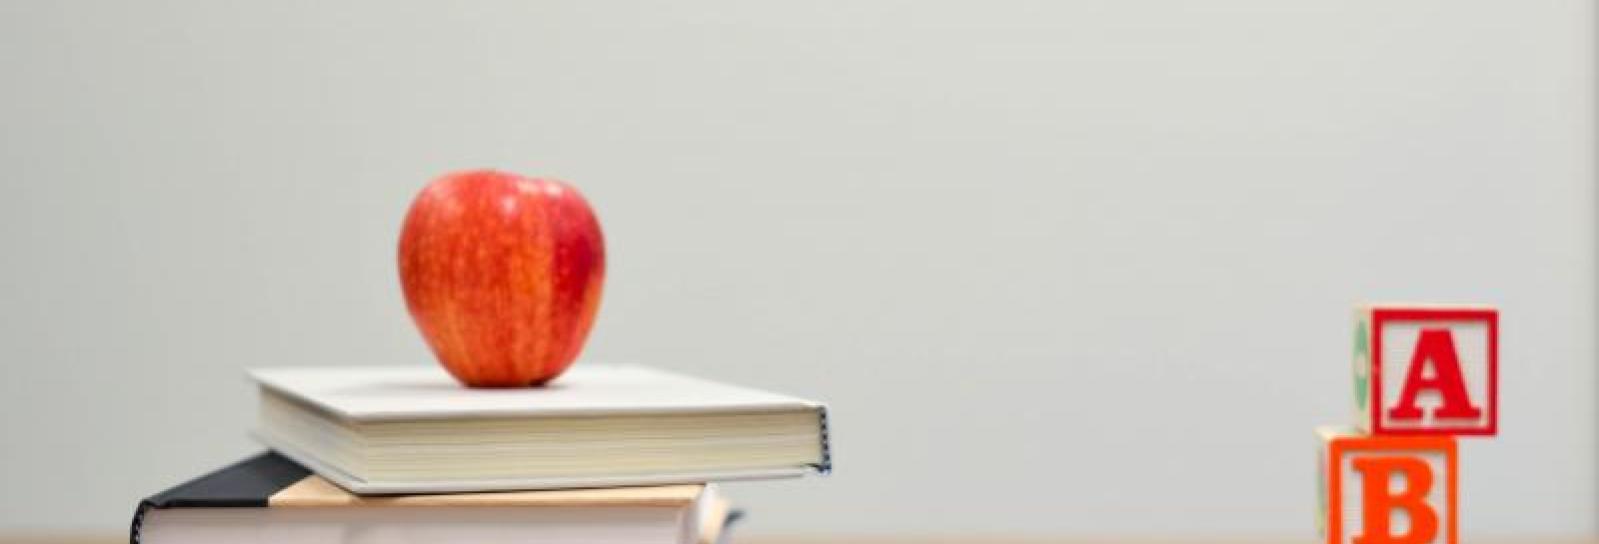 Underviser skrivebord med bøger og æble